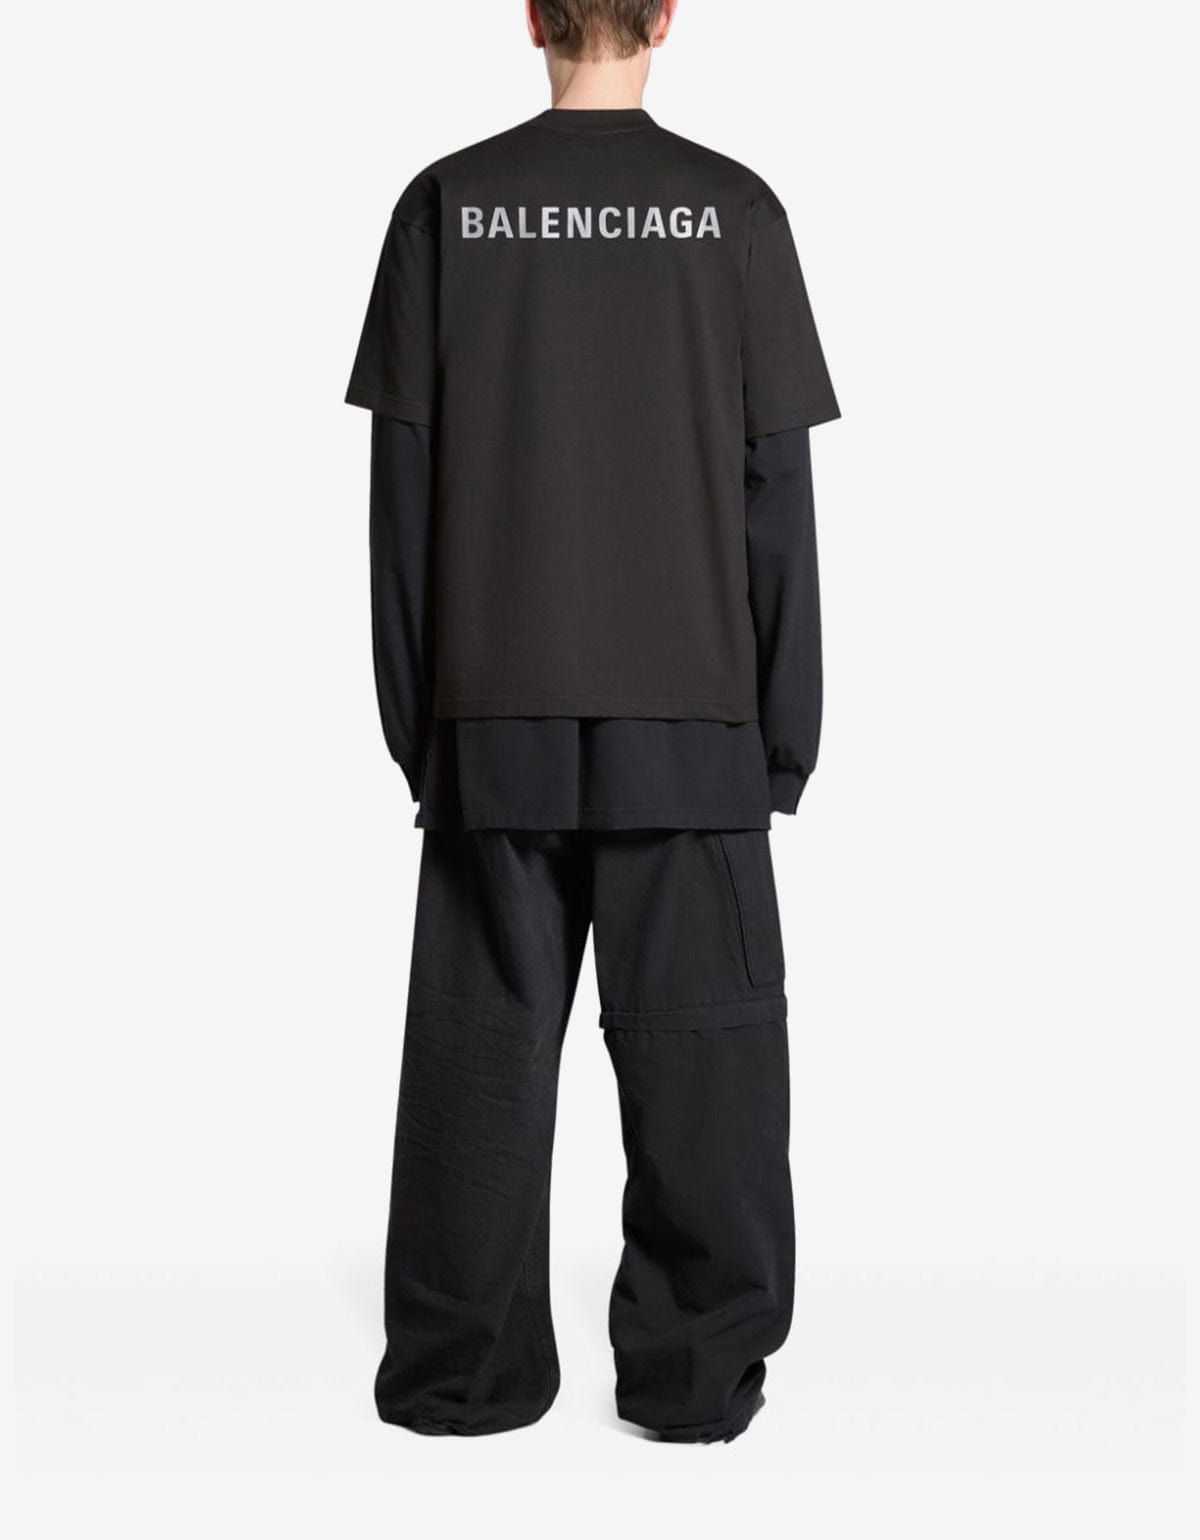 Balenciaga Black Logo Medium T-Shirt